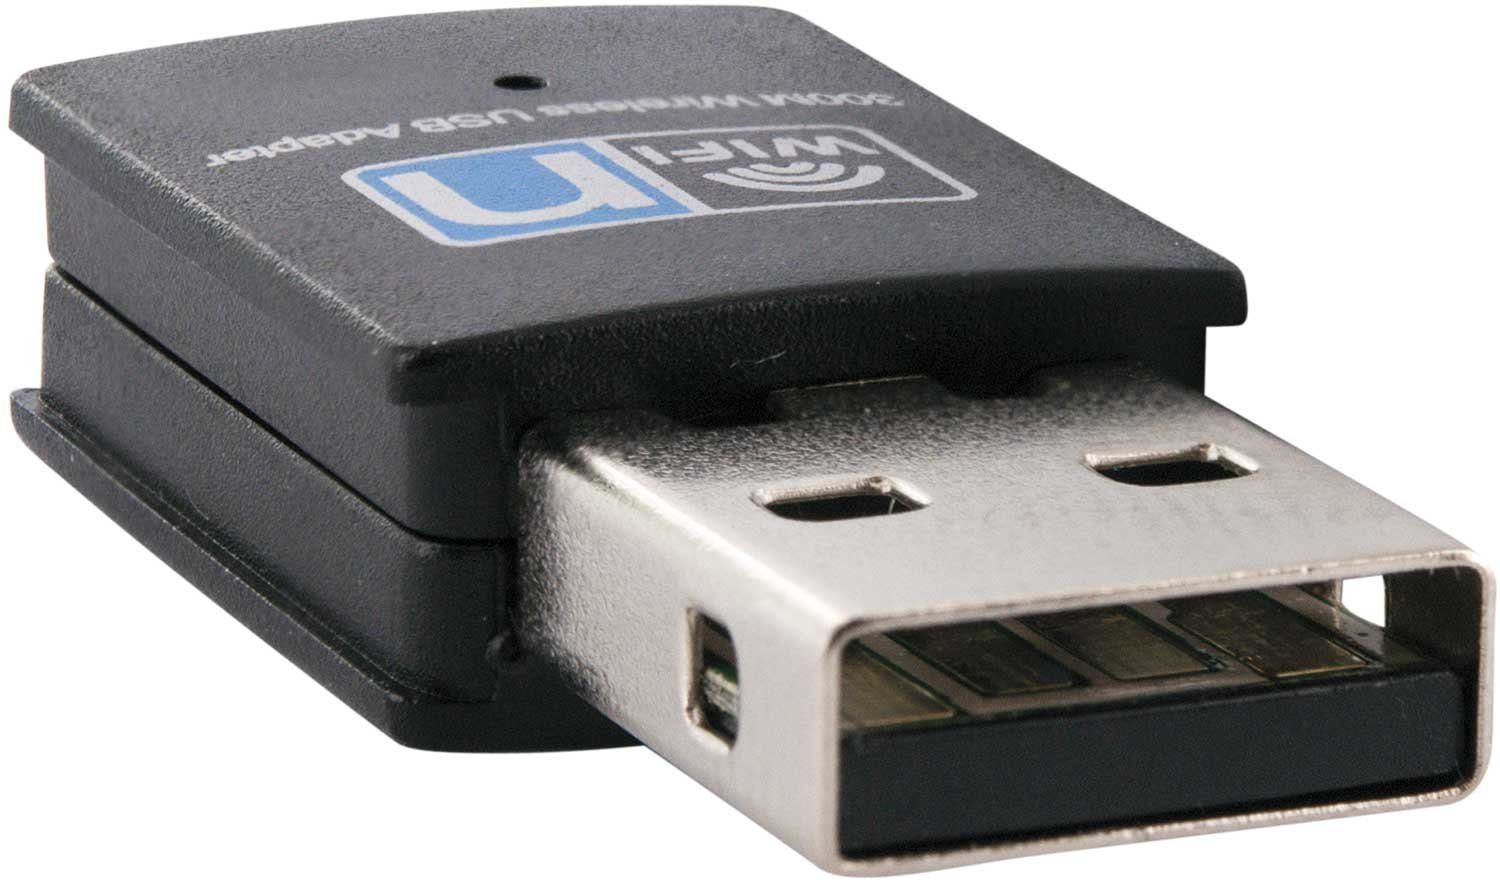 USB A USB-Adapter USB Schwaiger Stecker, DTR300WLAN 2.0 Wireless Adapter